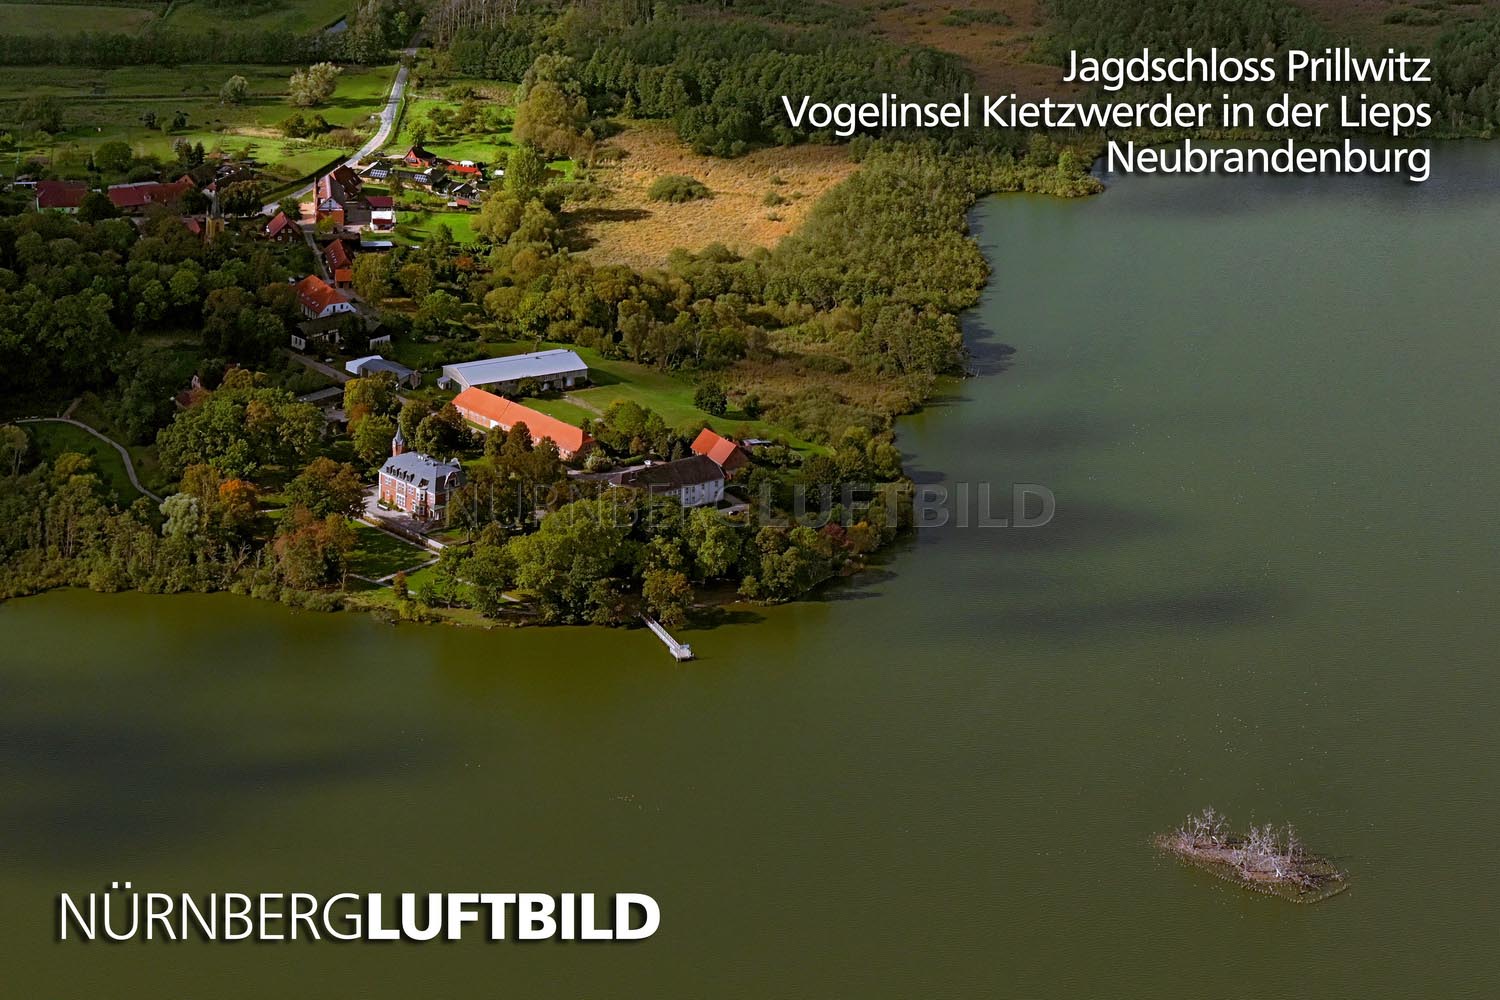 Jagdschloss Prillwitz, Vogelinsel Kietzwerder in der Lieps, Neubrandenburg